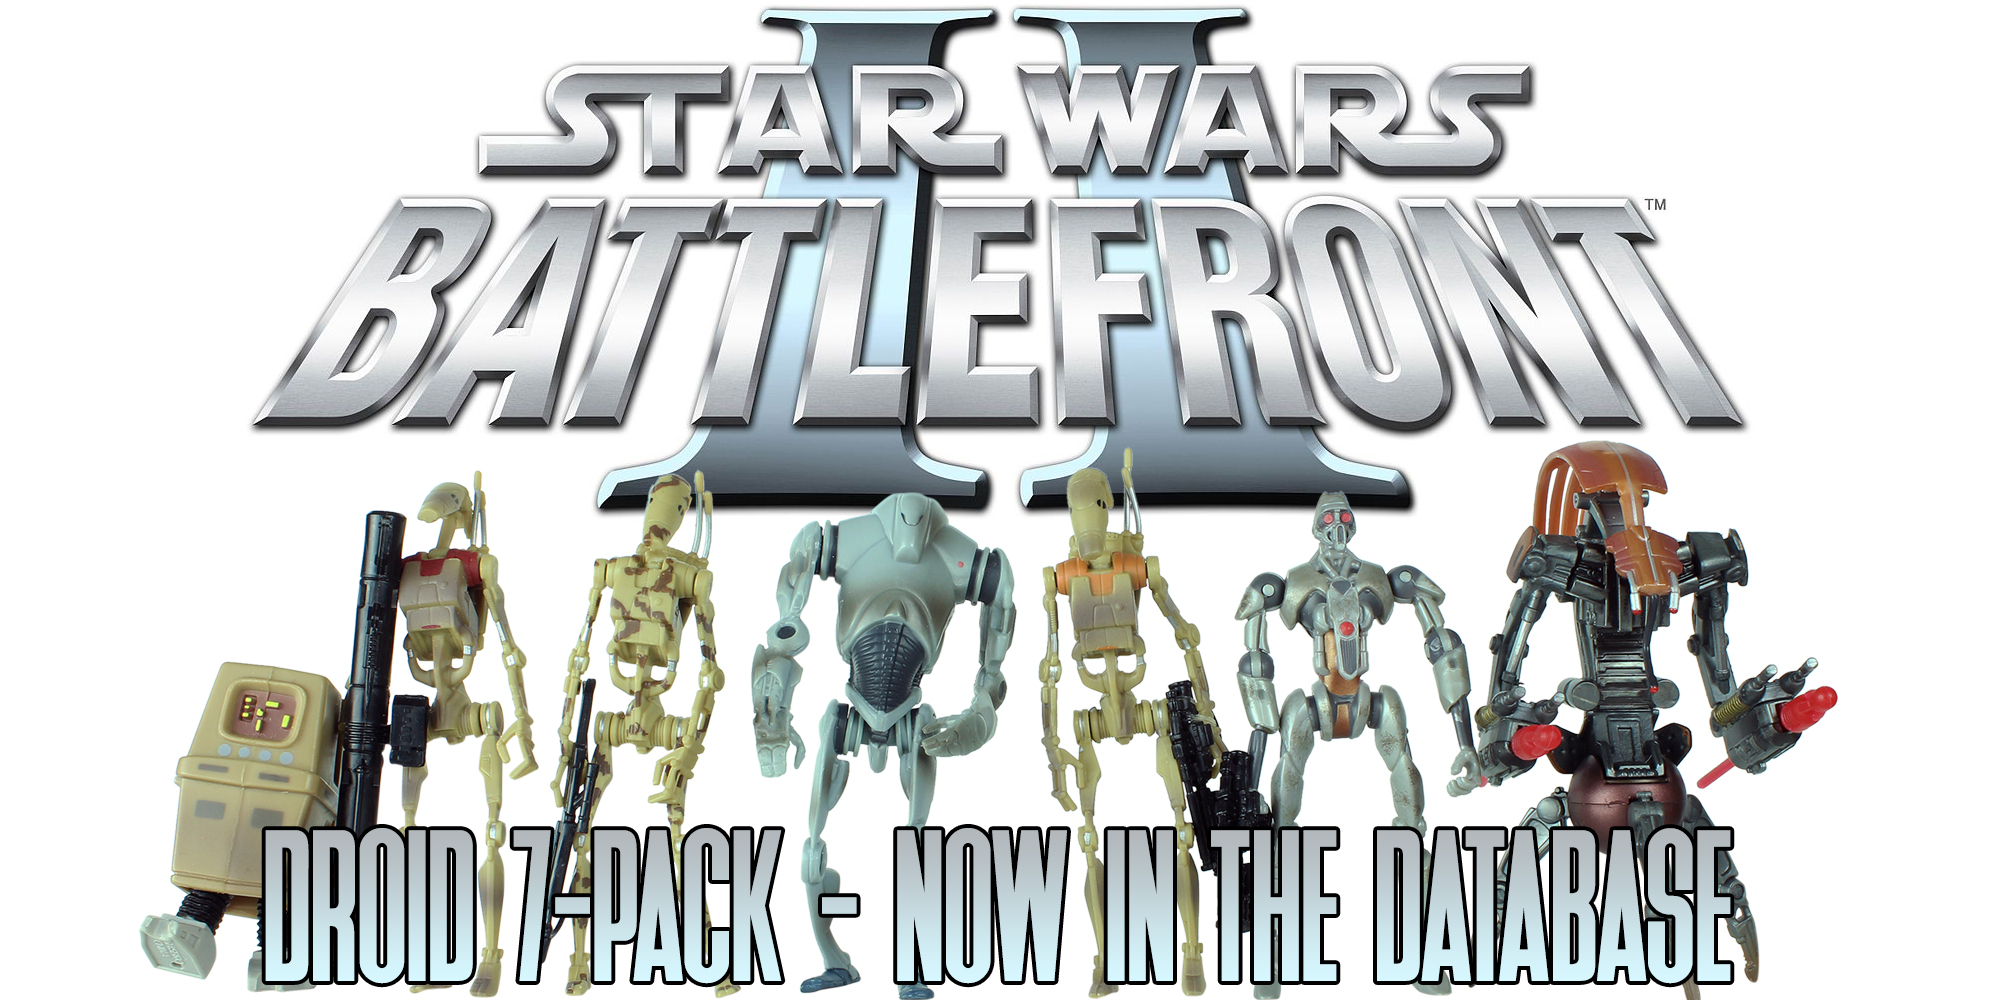 Star Wars Battlefront figures